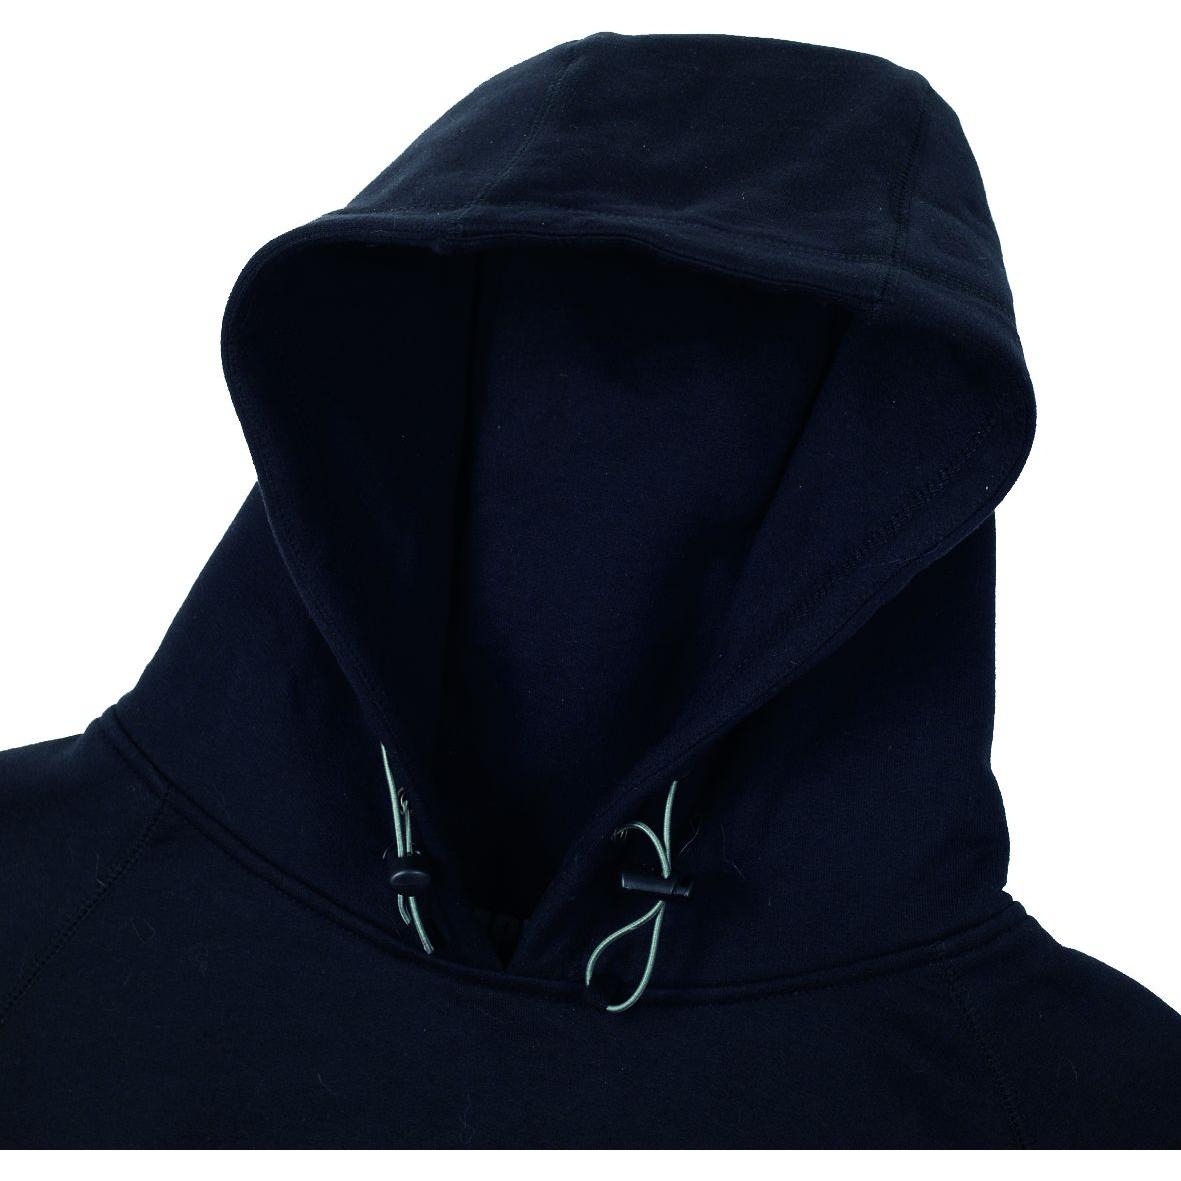 Apache Zenith Hooded Sweatshirt -Black